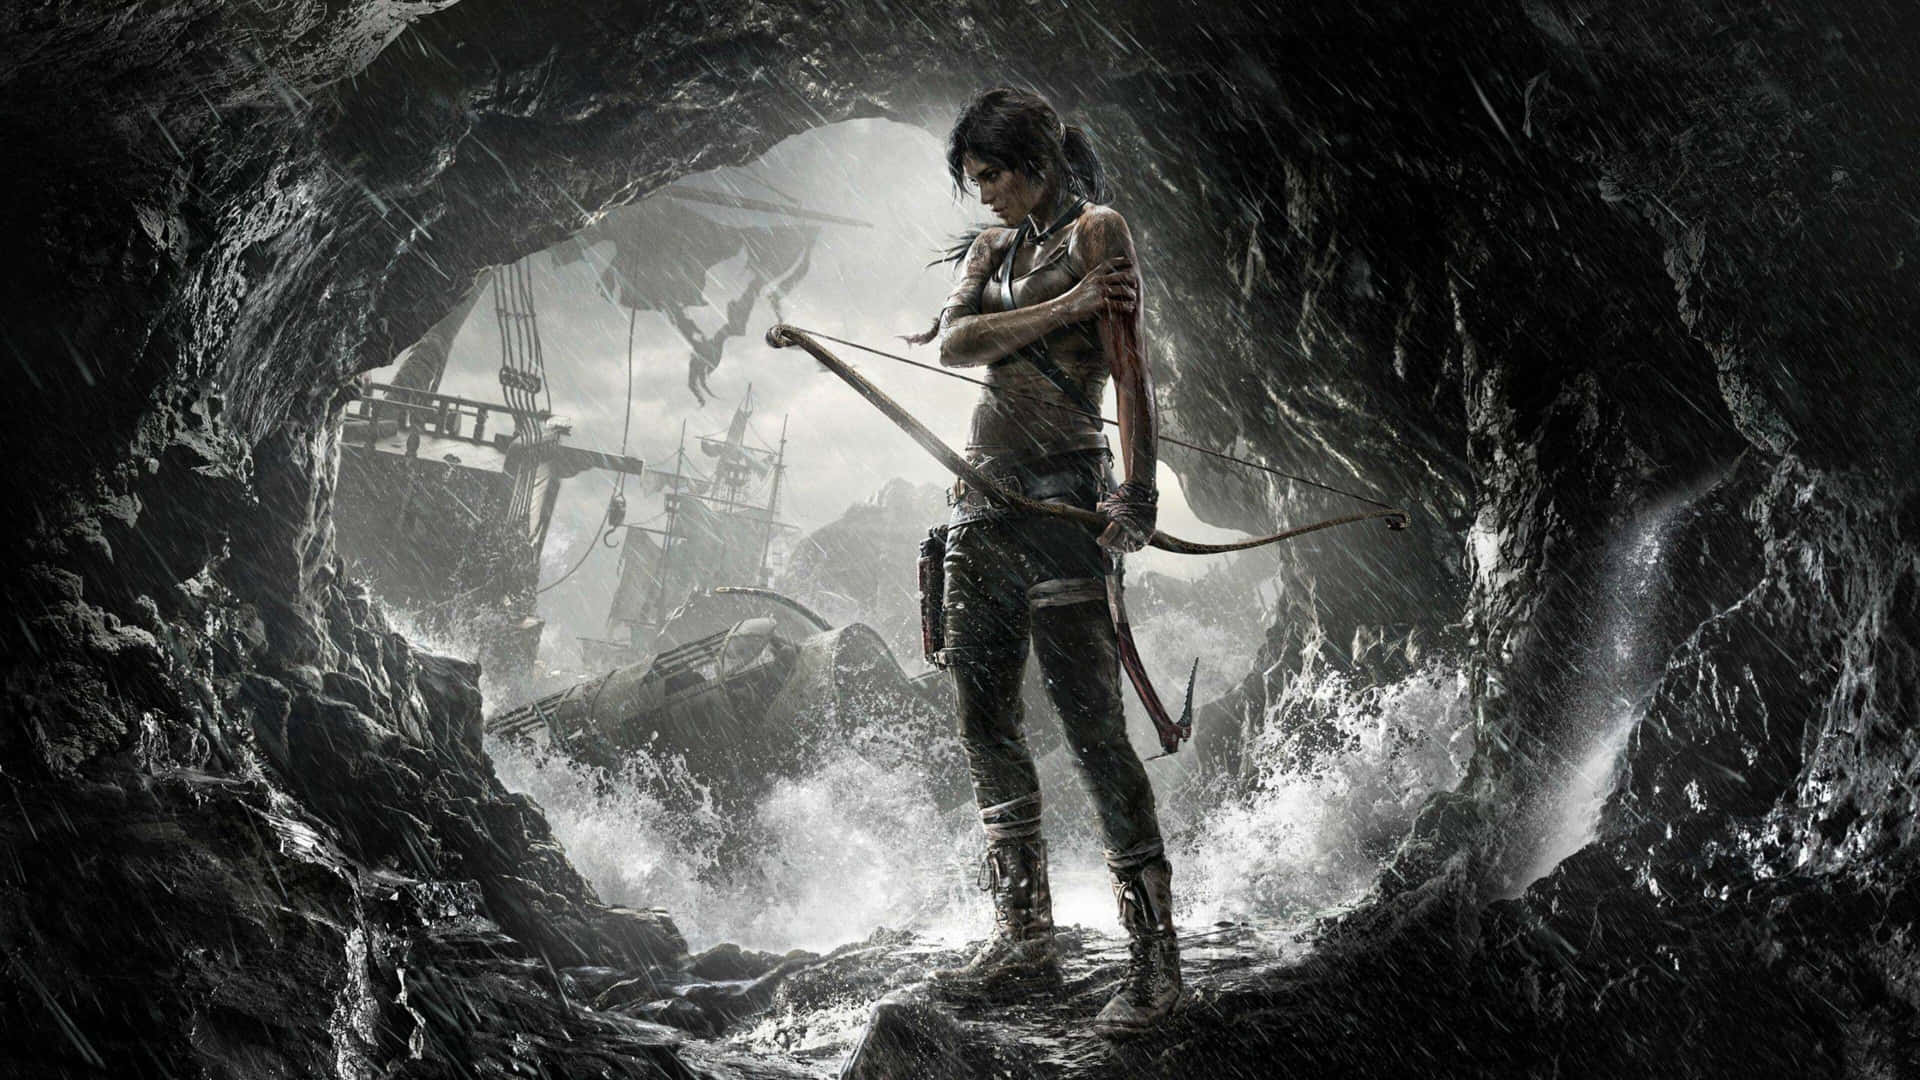 Fondosde Pantalla De México Cozumel Caves En 4k Inspirados En Shadow Of The Tomb Raider.